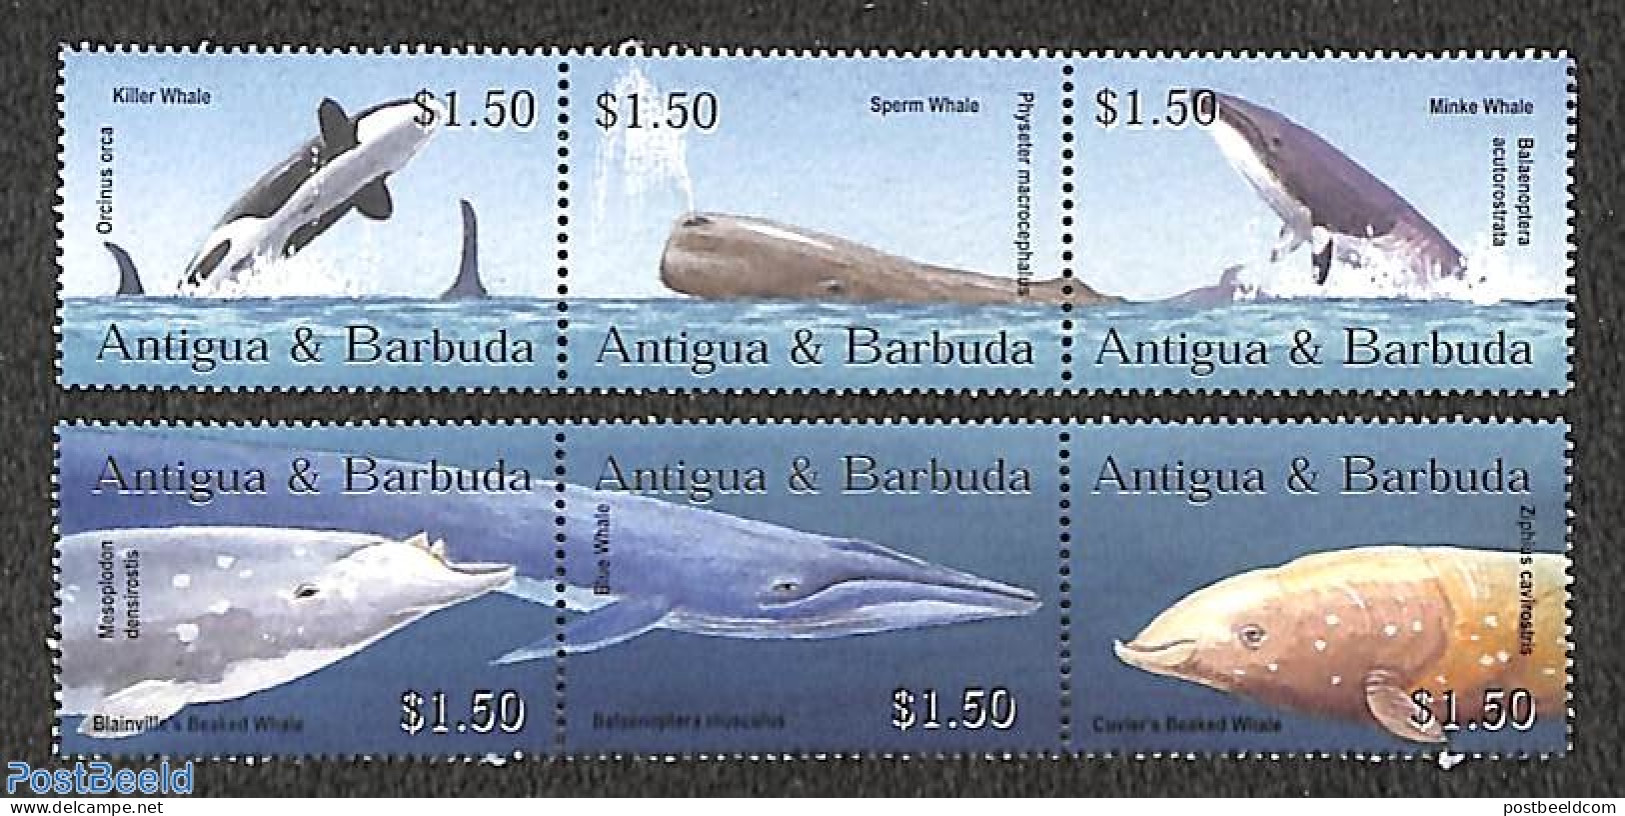 Antigua & Barbuda 2002 Whales 6v, Mint NH, Nature - Sea Mammals - Antigua Und Barbuda (1981-...)